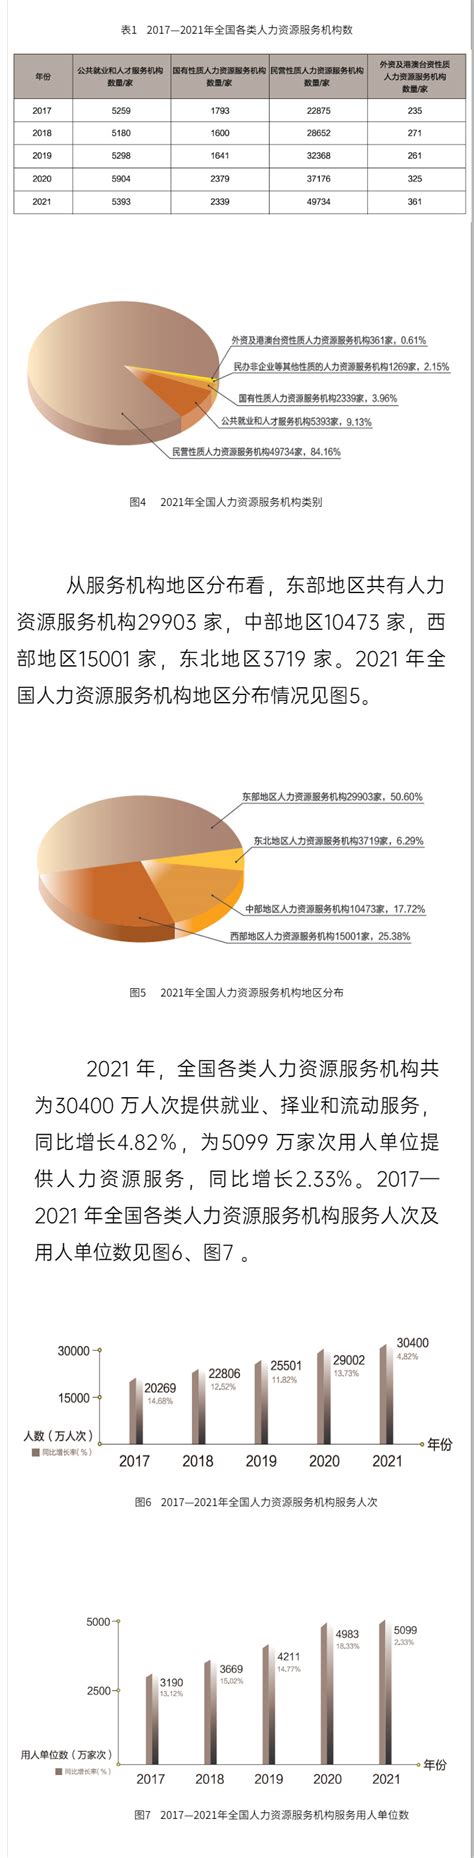 湖北省人力资源市场条例2022最新【全文】 - 地方条例 - 律科网